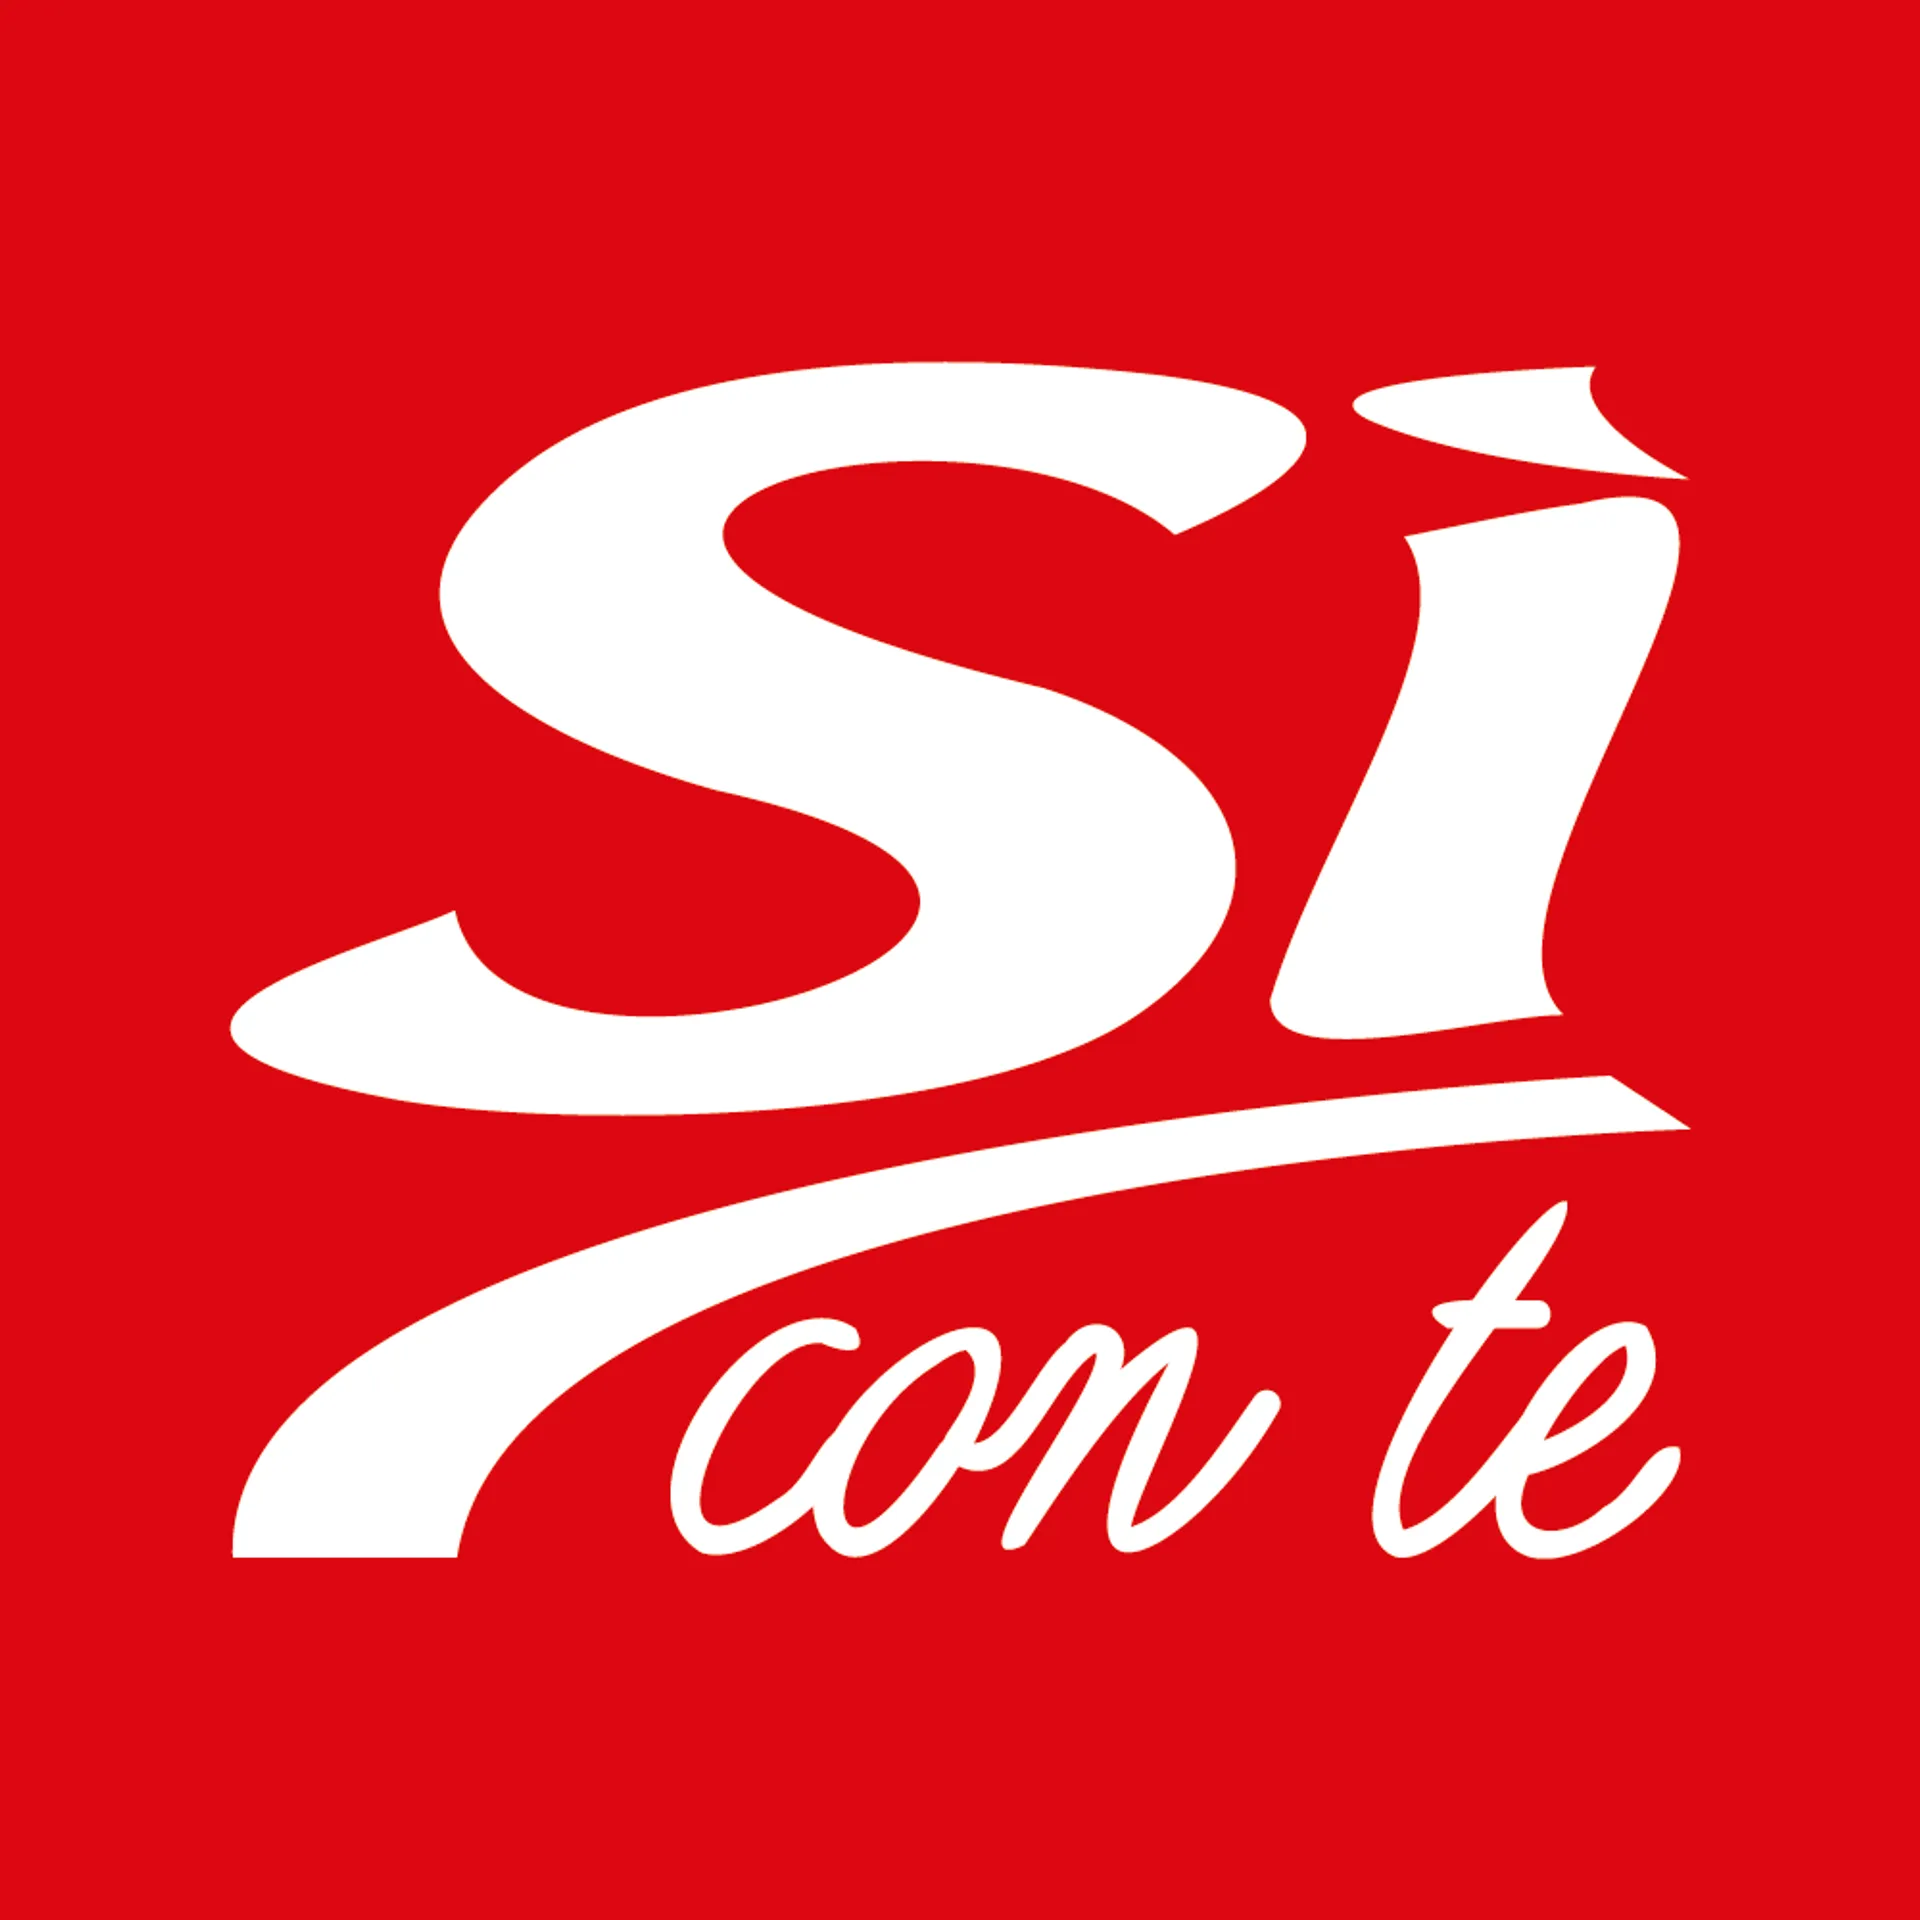 SI CON TE logo